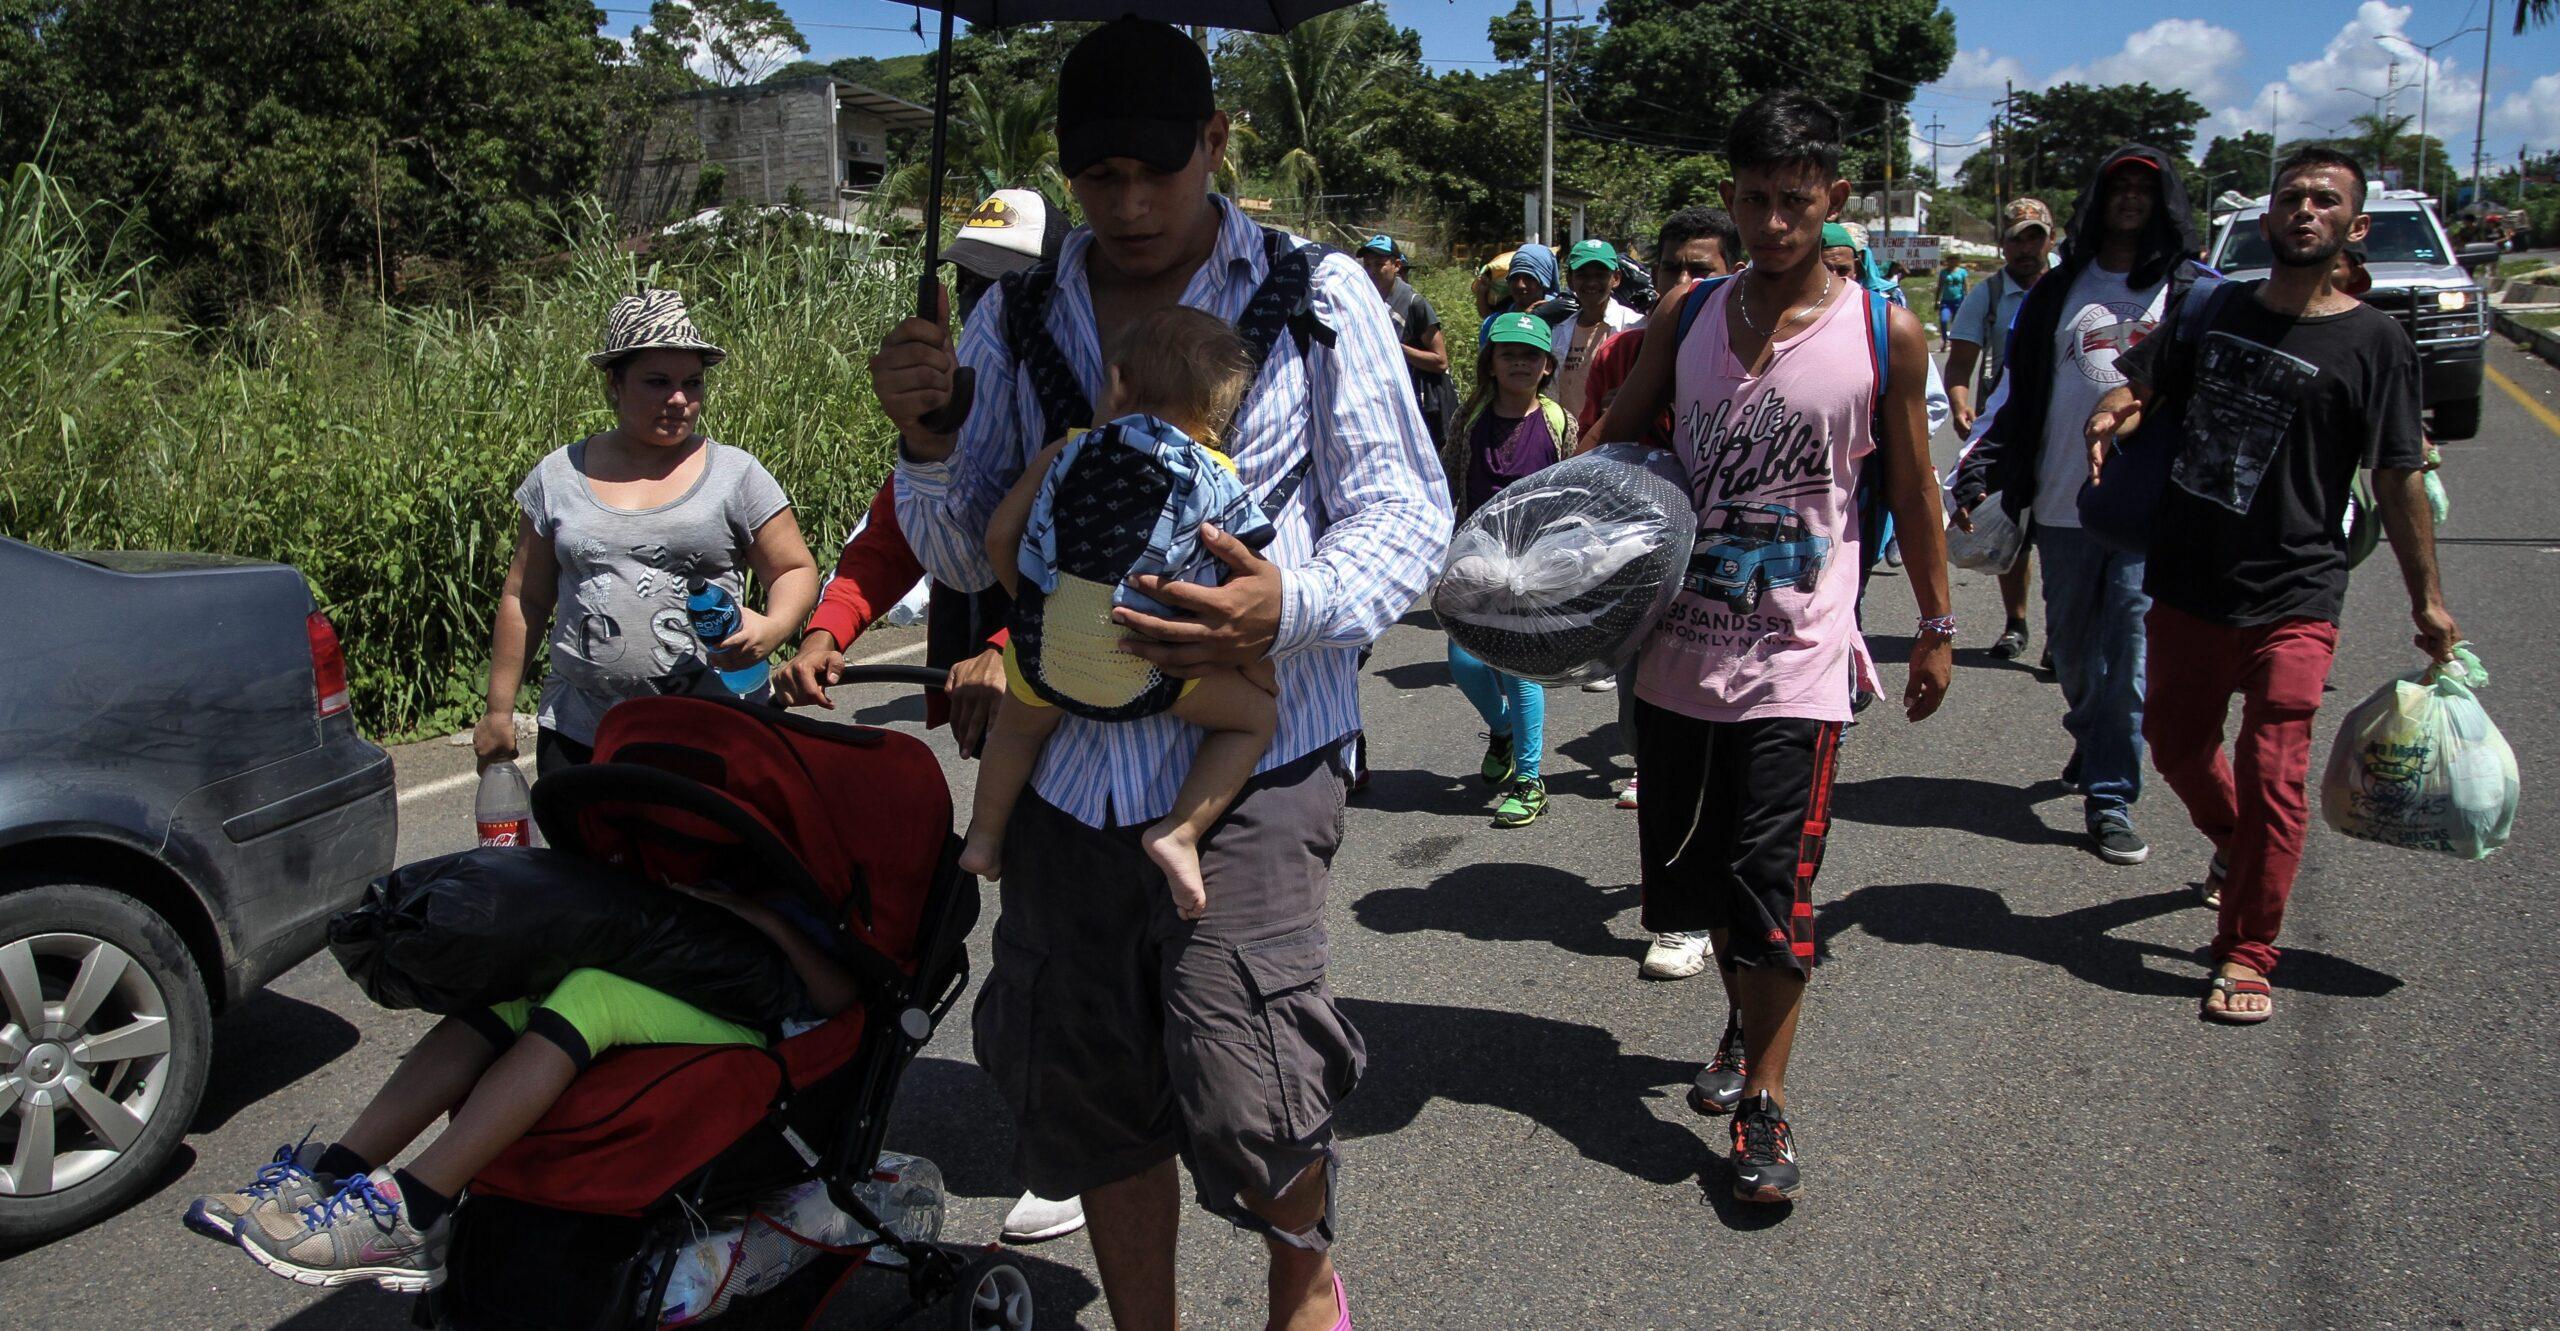 El 52% de los mexicanos apoya a la caravana migrante y que se les dé empleo: encuesta